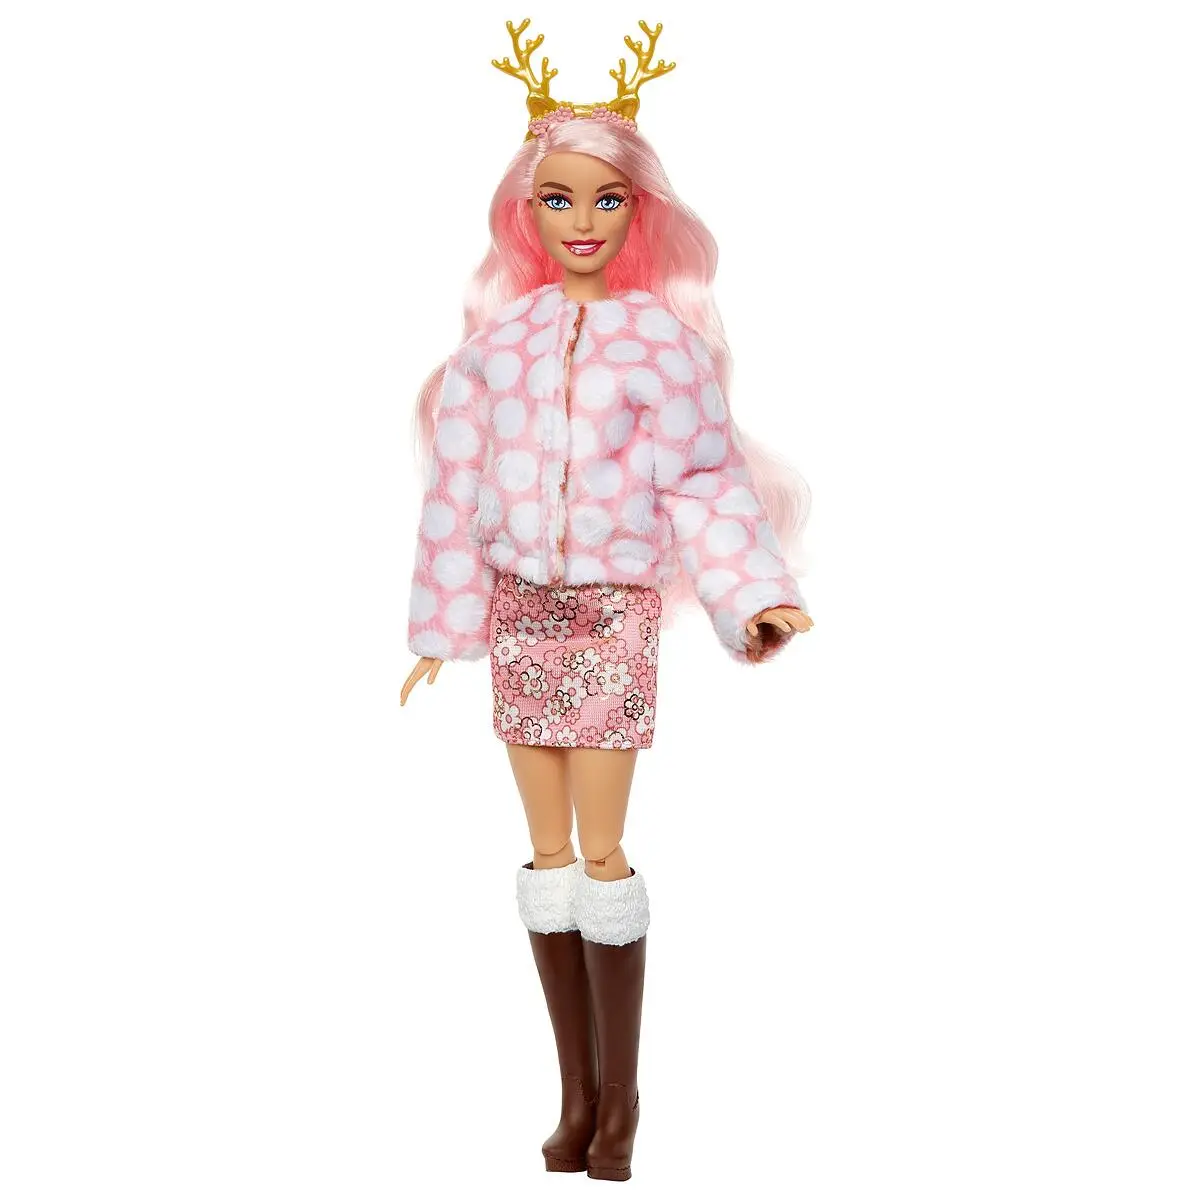 Barbie cutie reveal ours polaire, poupees